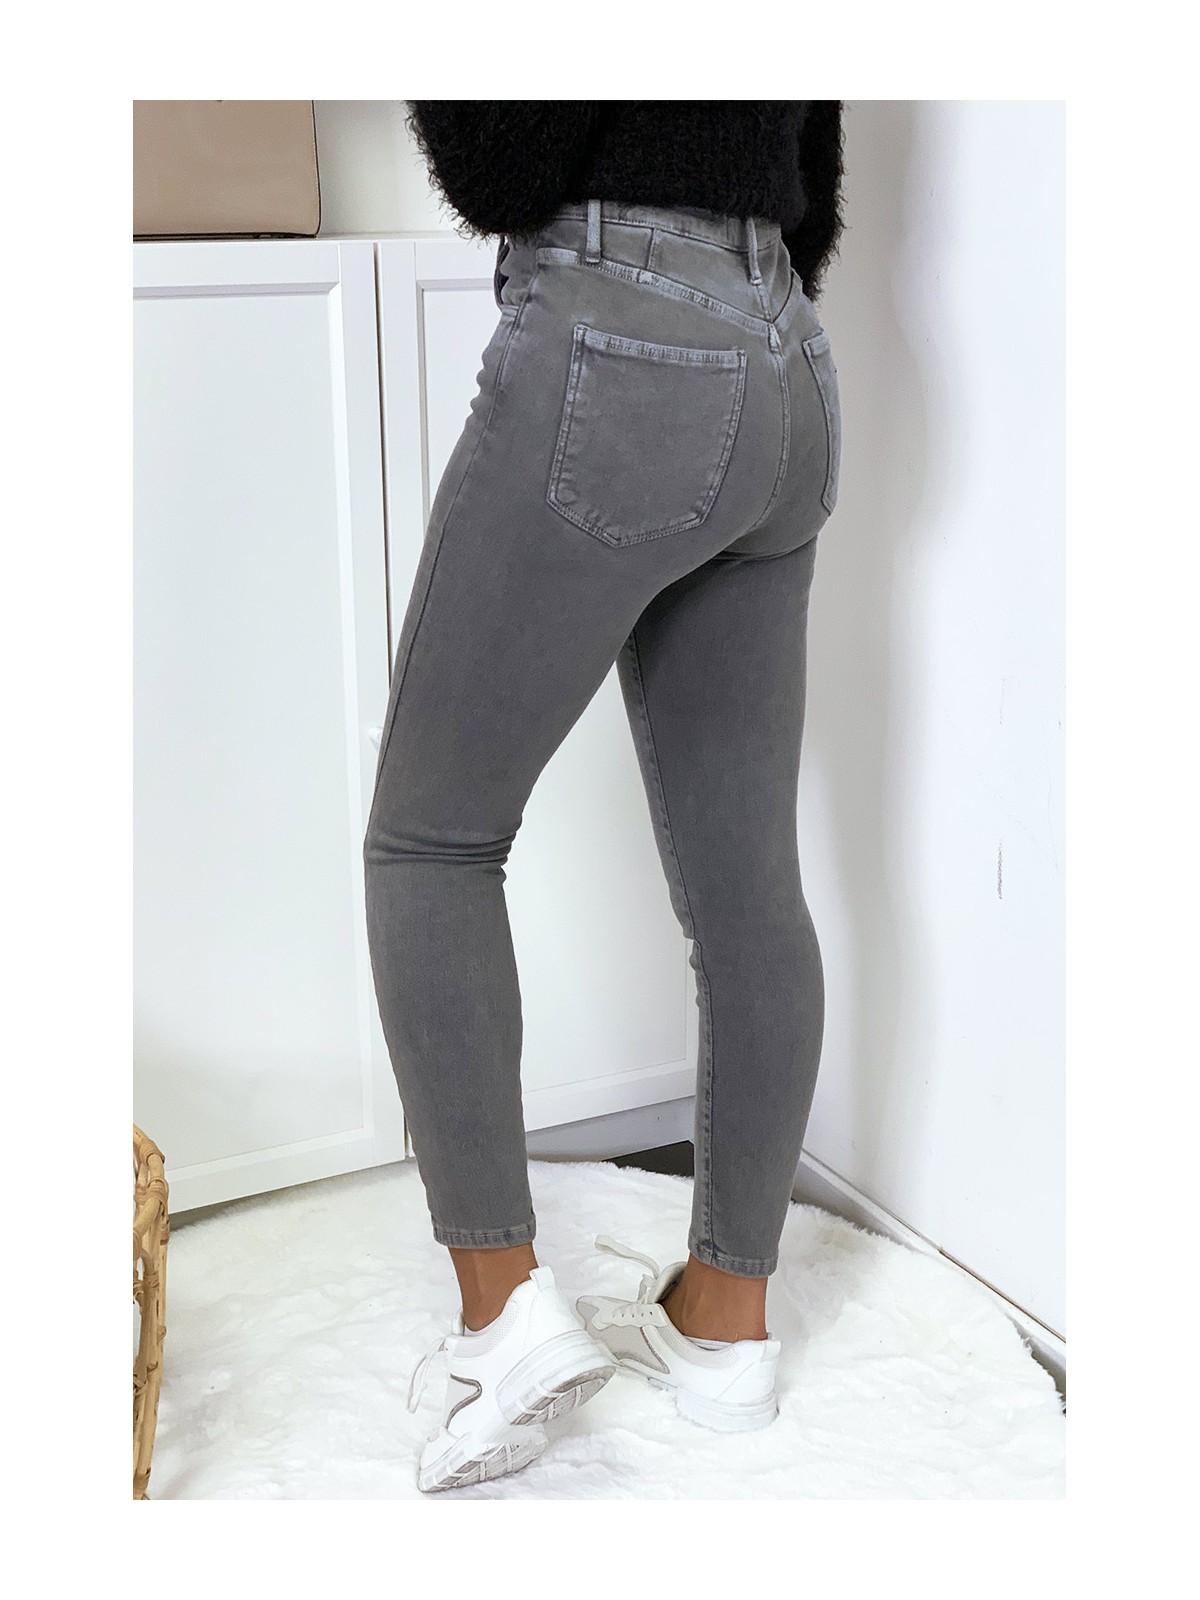 Jeans gris en taille haute très extensible avec poches - 6